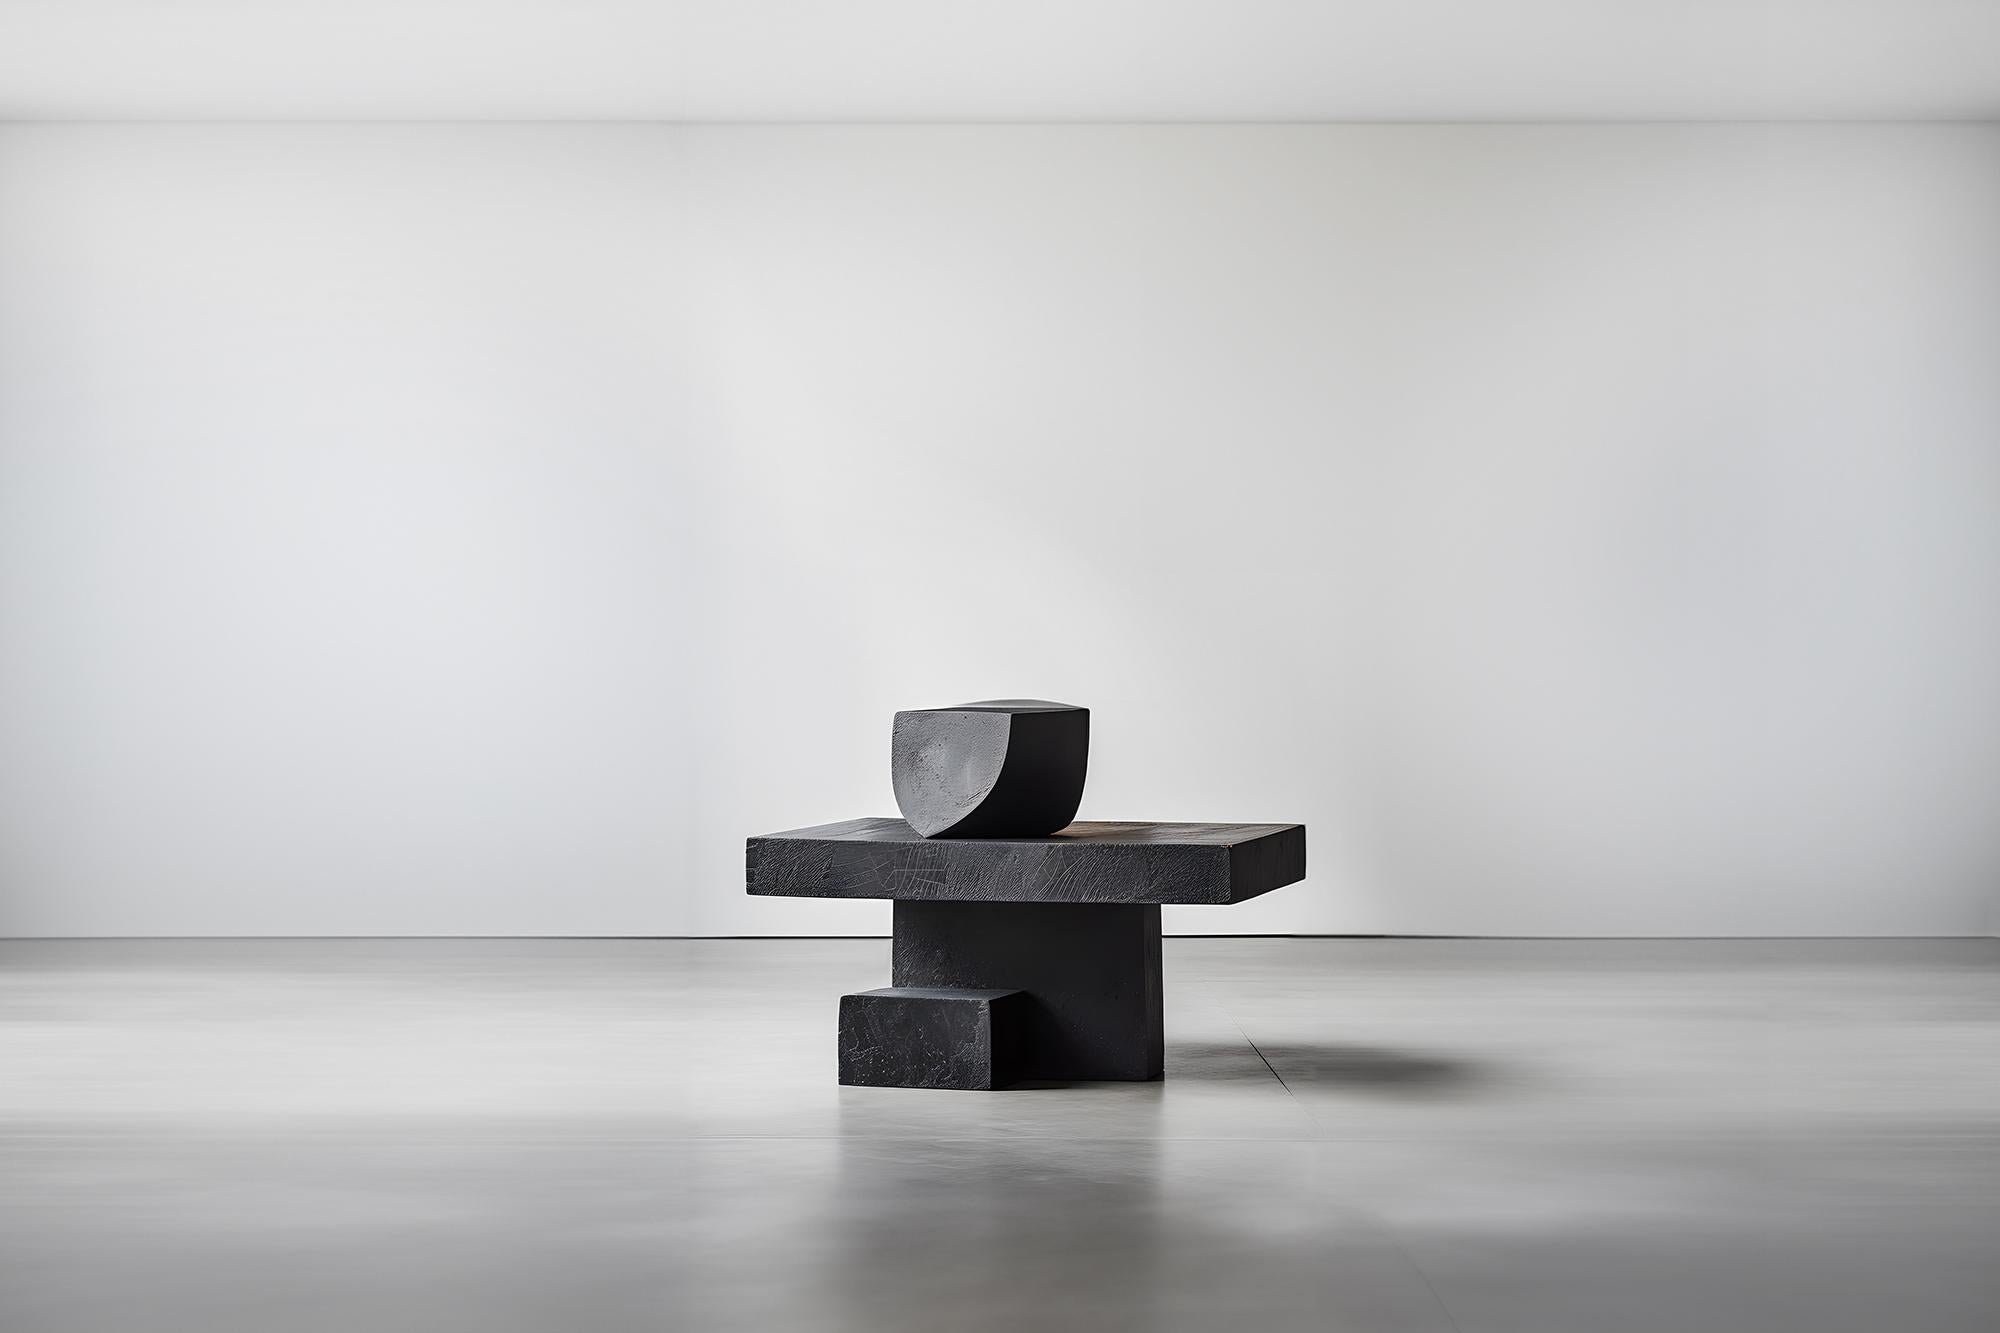 Skulpturaler unsichtbarer Force #2 Joel Escalona's Tisch aus Massivholz, modernes Kunstwerk
--
Skulpturaler Couchtisch aus Massivholz mit natürlichem Finish auf Wasserbasis oder karbonisiert. Aufgrund der Natur des Produktionsprozesses kann jedes